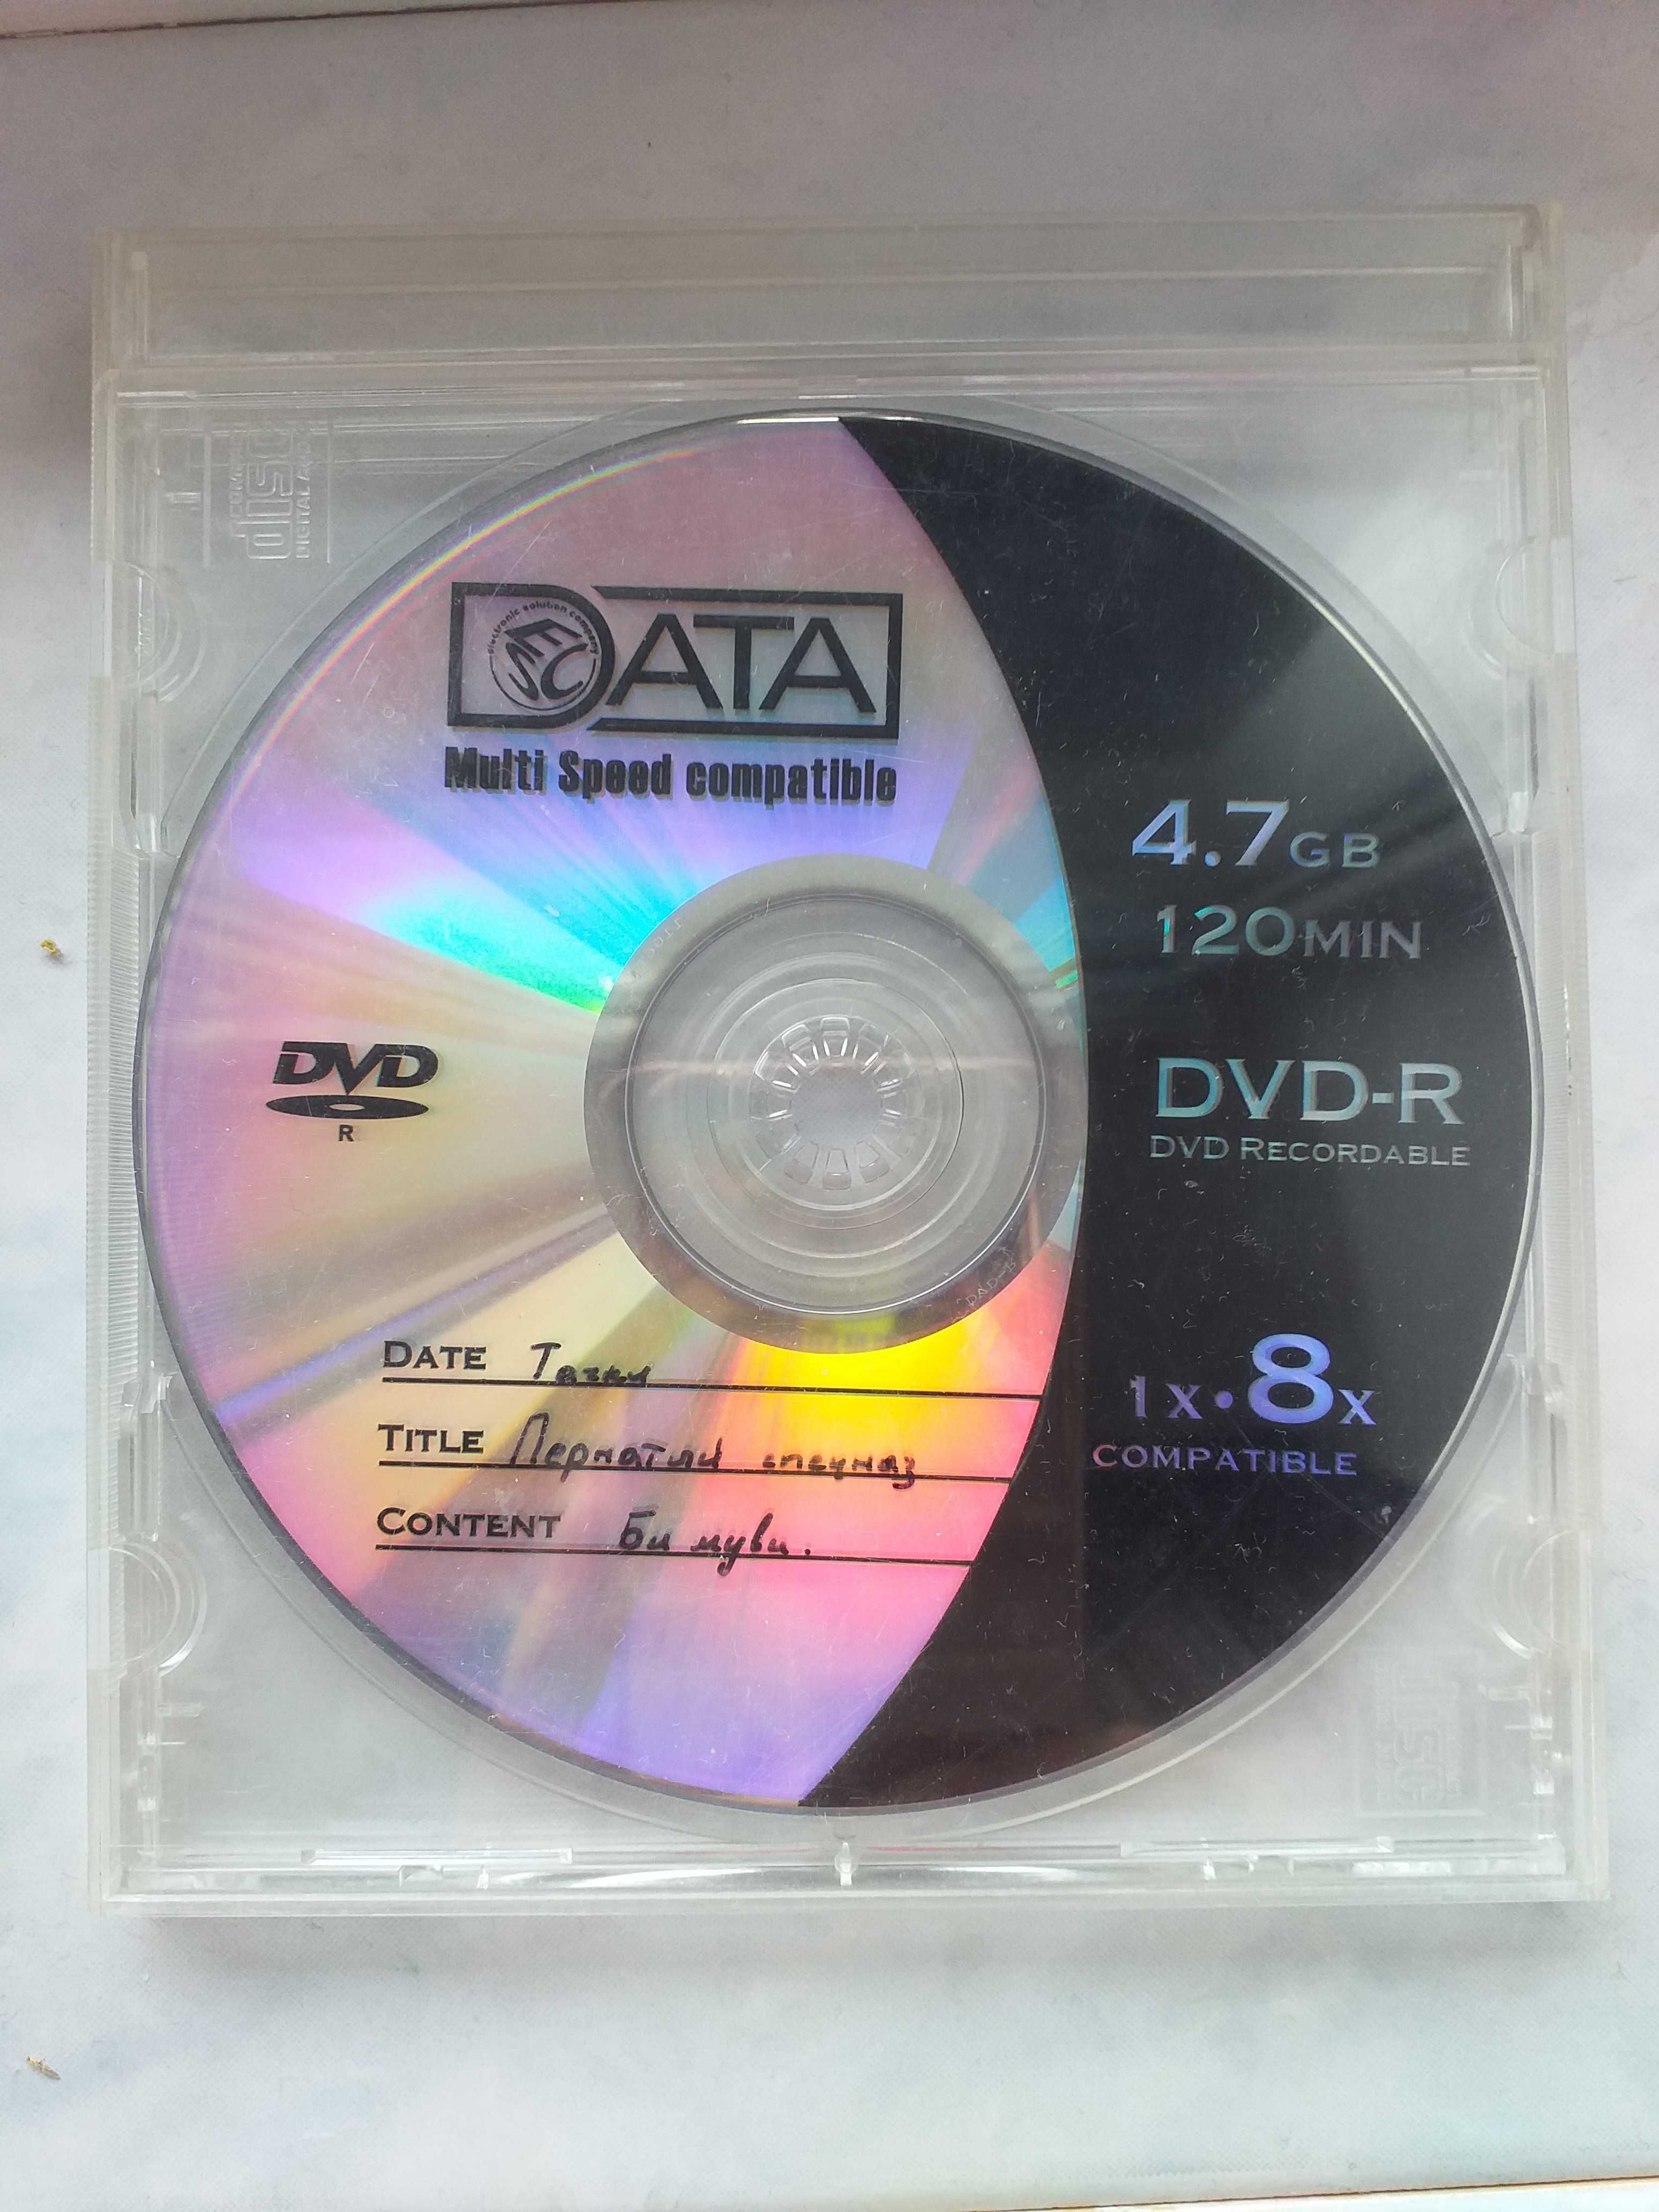 кассеты детские советские и диски DVD c песнями и мультфильмами